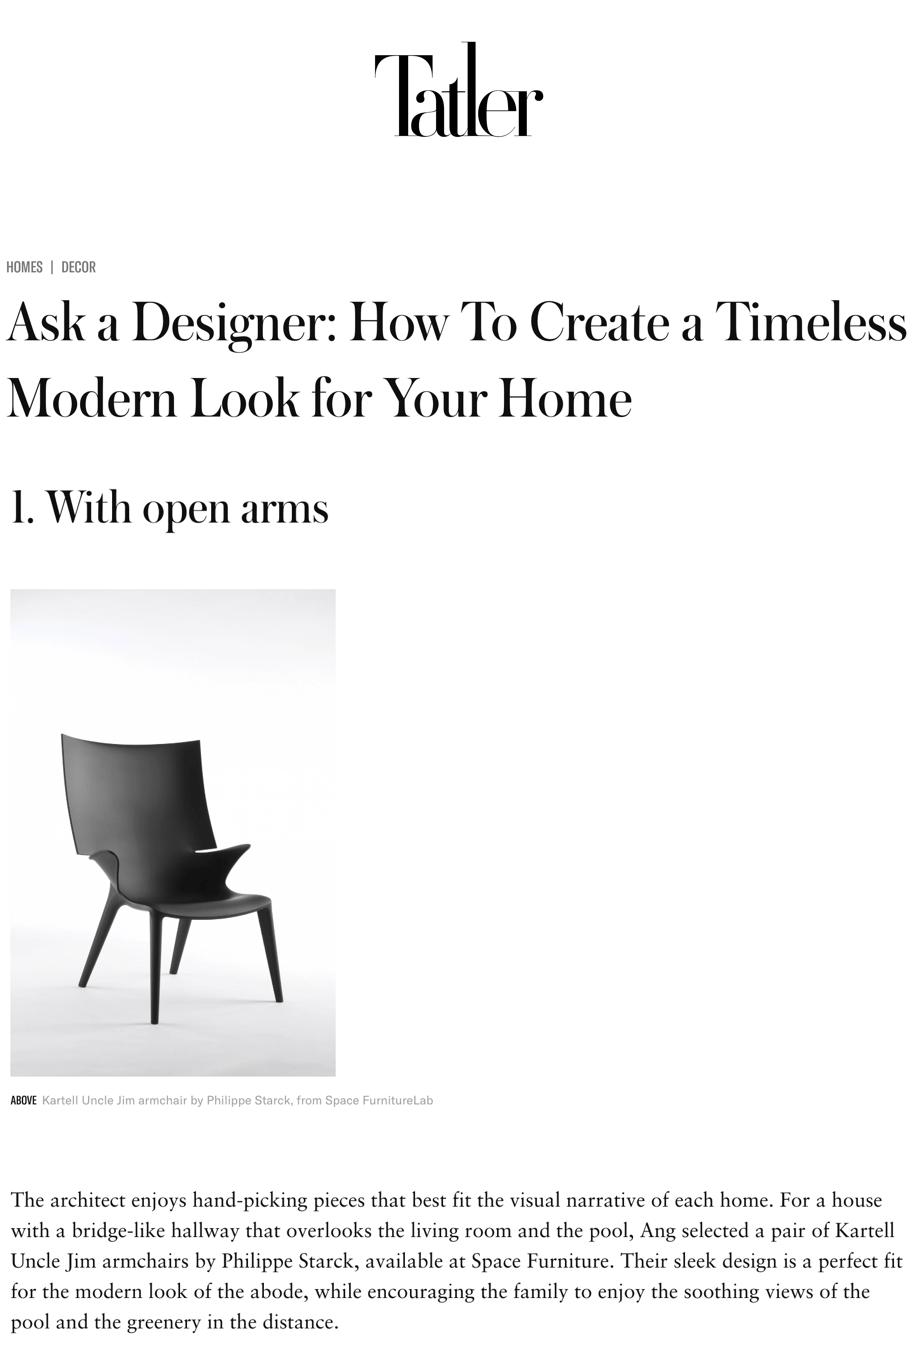 Demandez à un designer : Comment créer un look moderne et intemporel pour votre maison ?